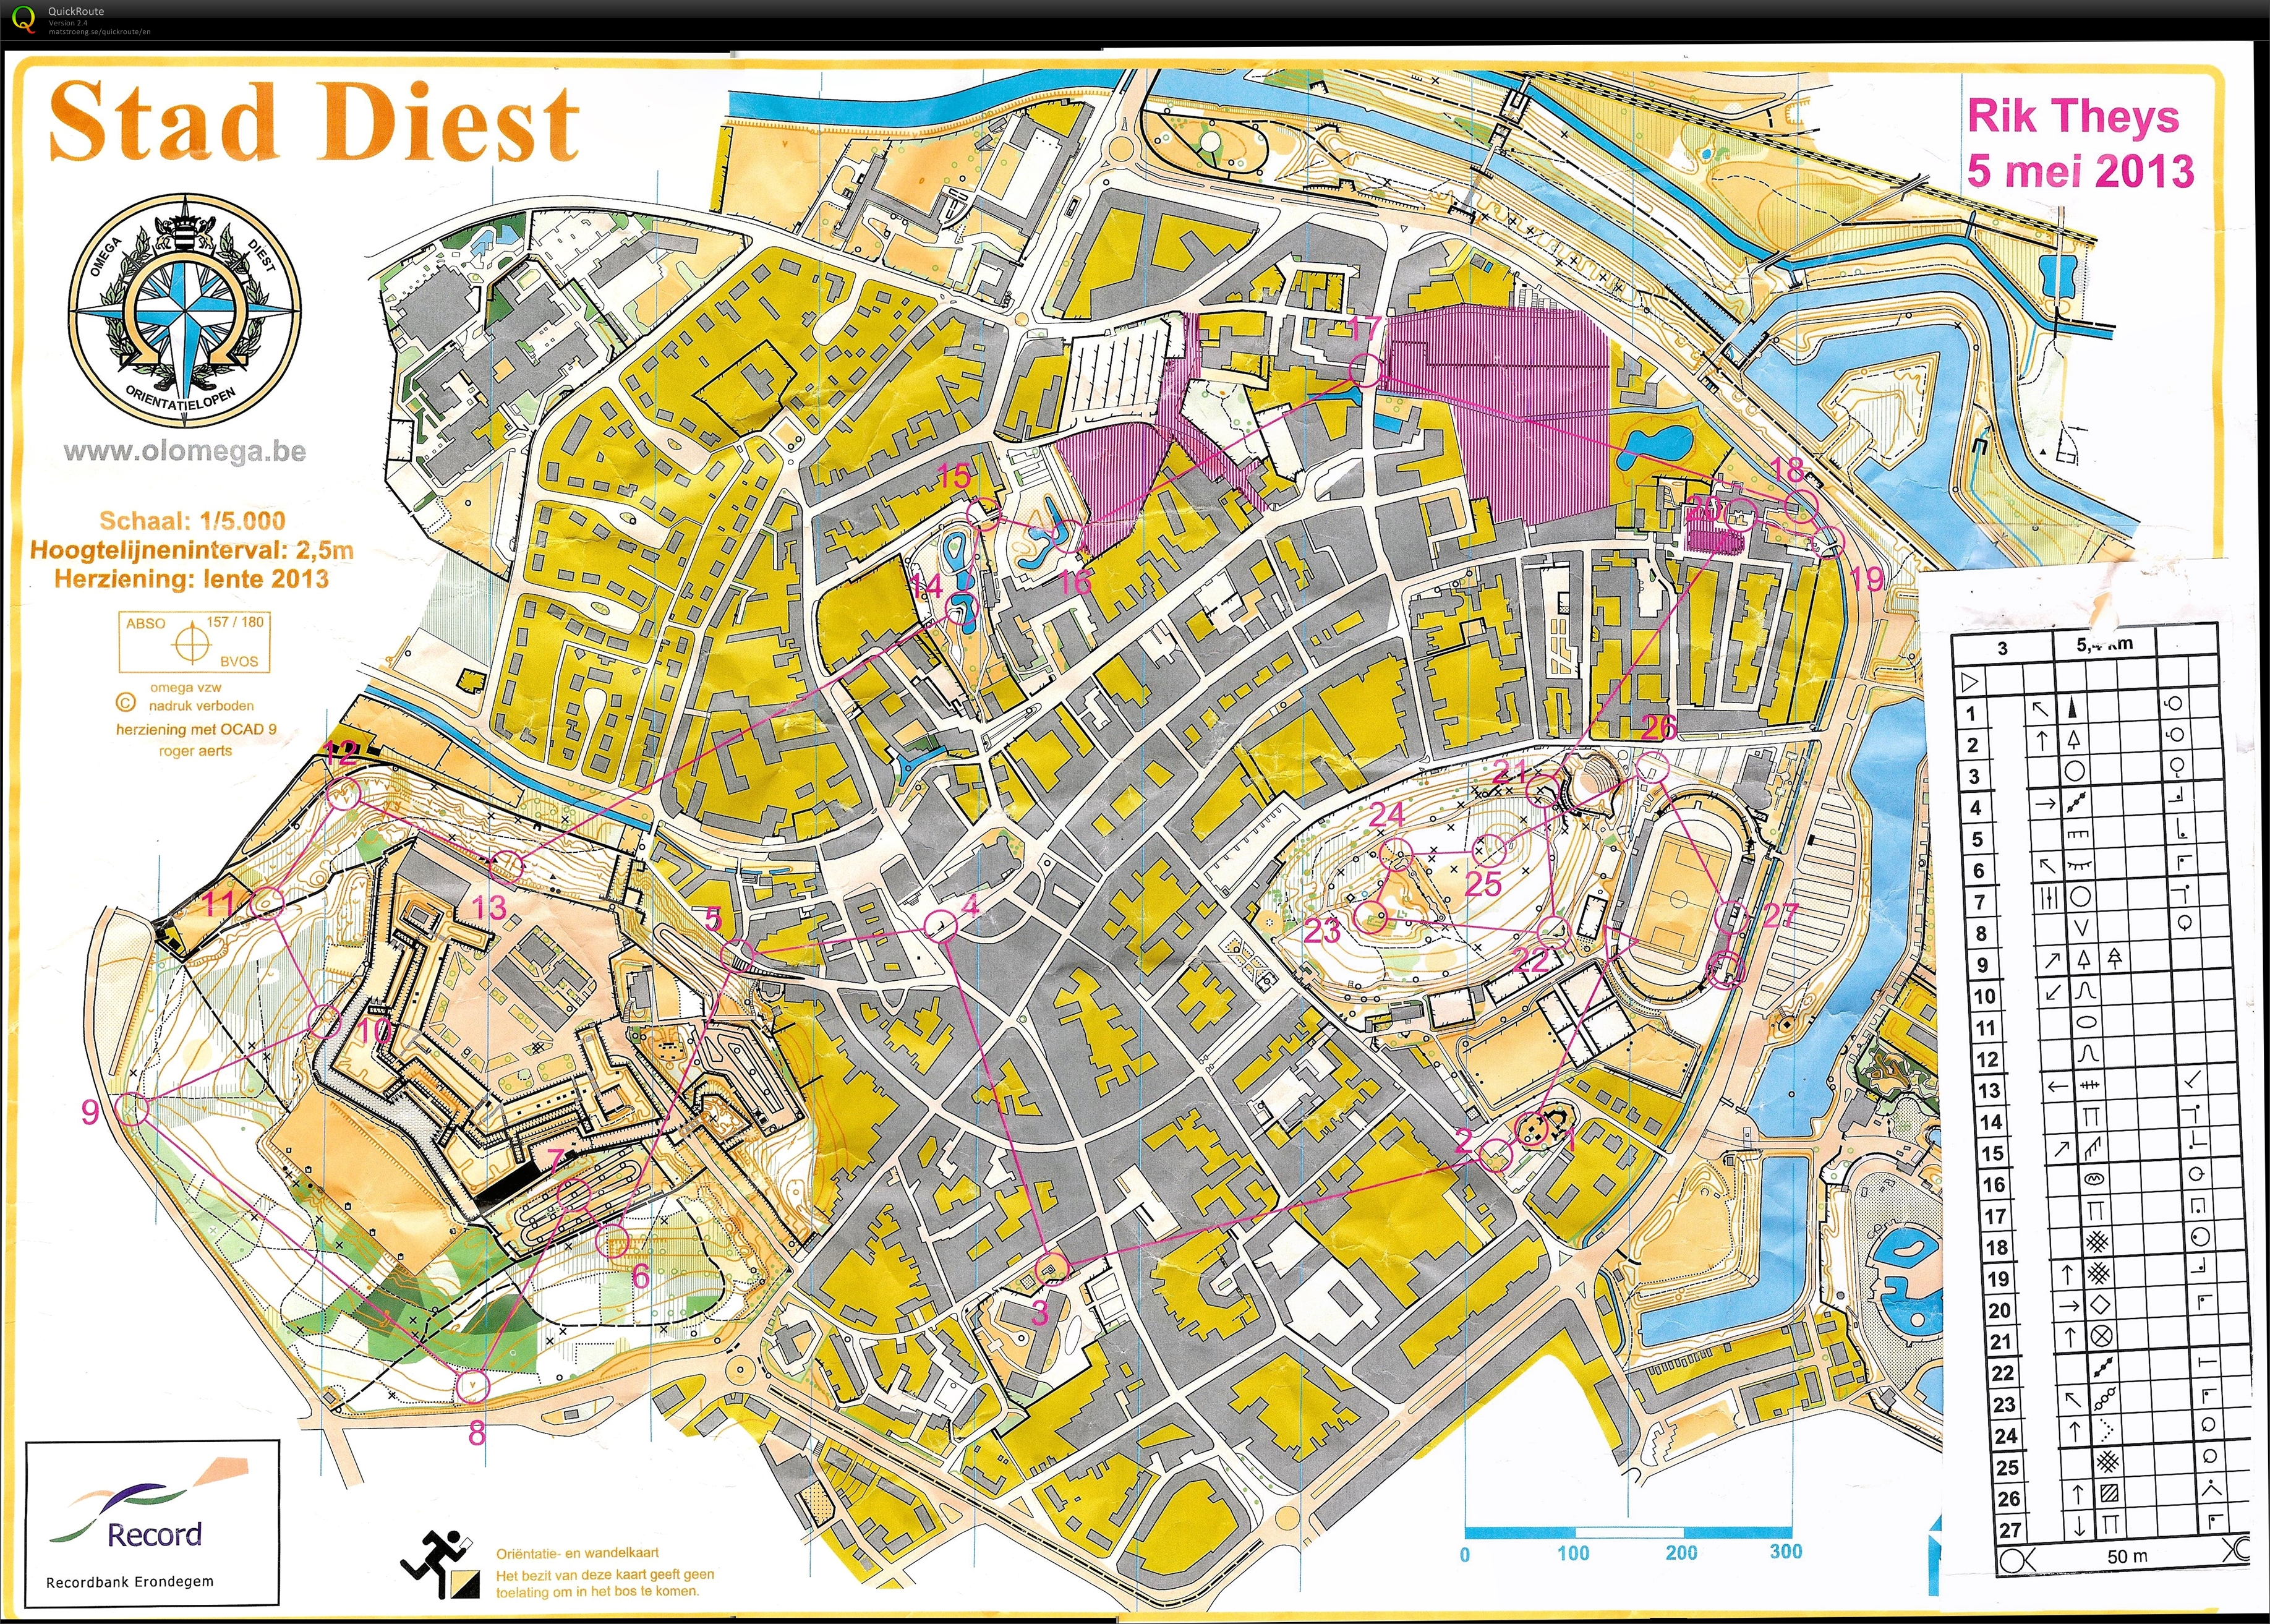 Stad Diest (2013-05-05)